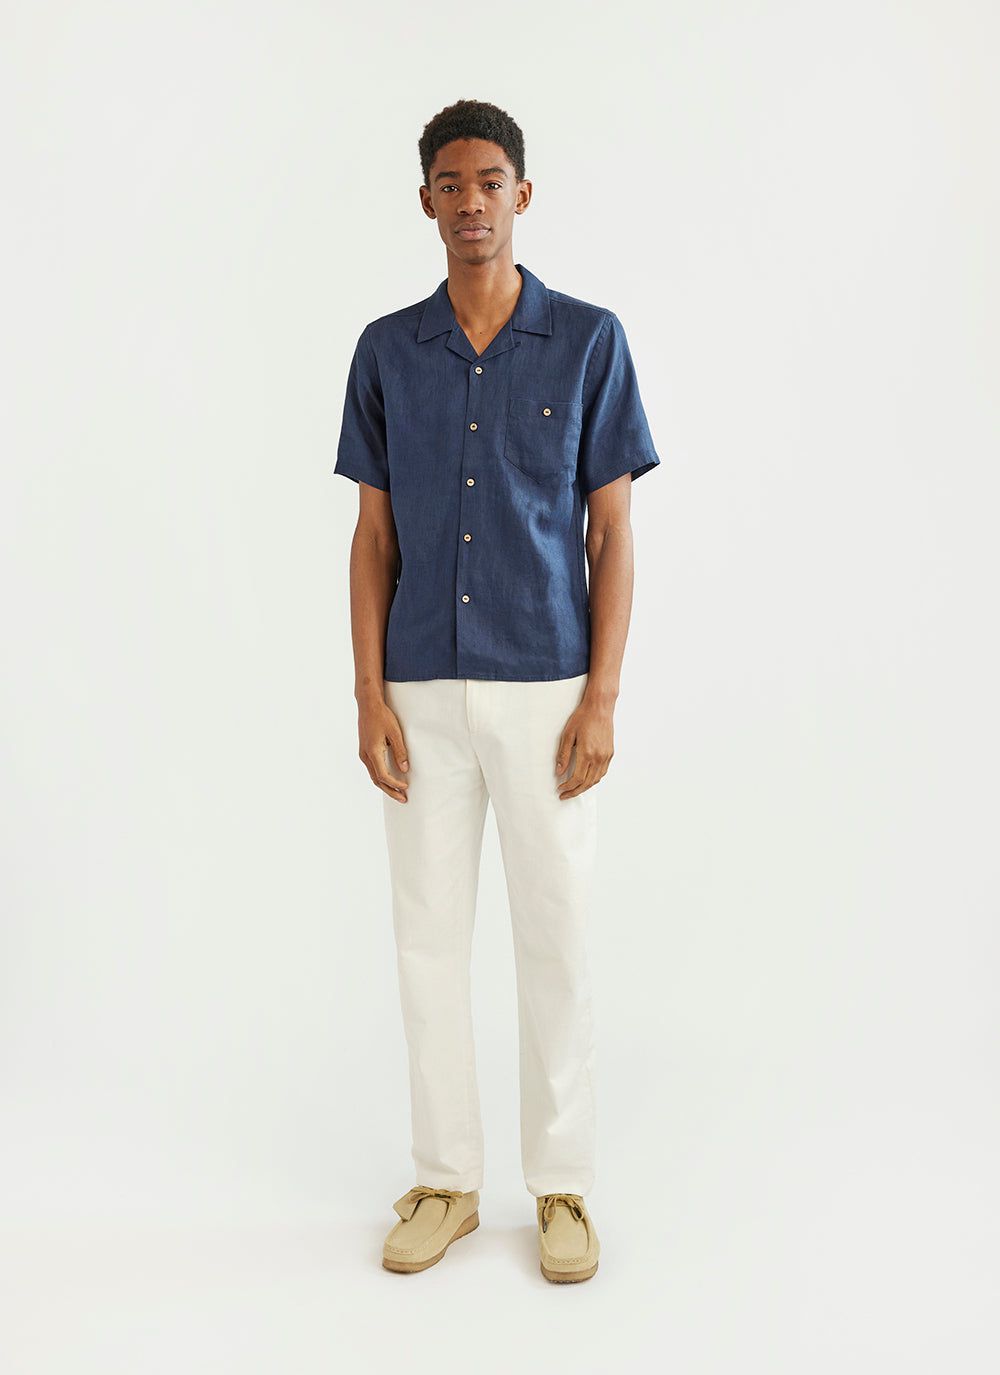 Men's Cuban Collar Shirt | Linen Shirt | Navy